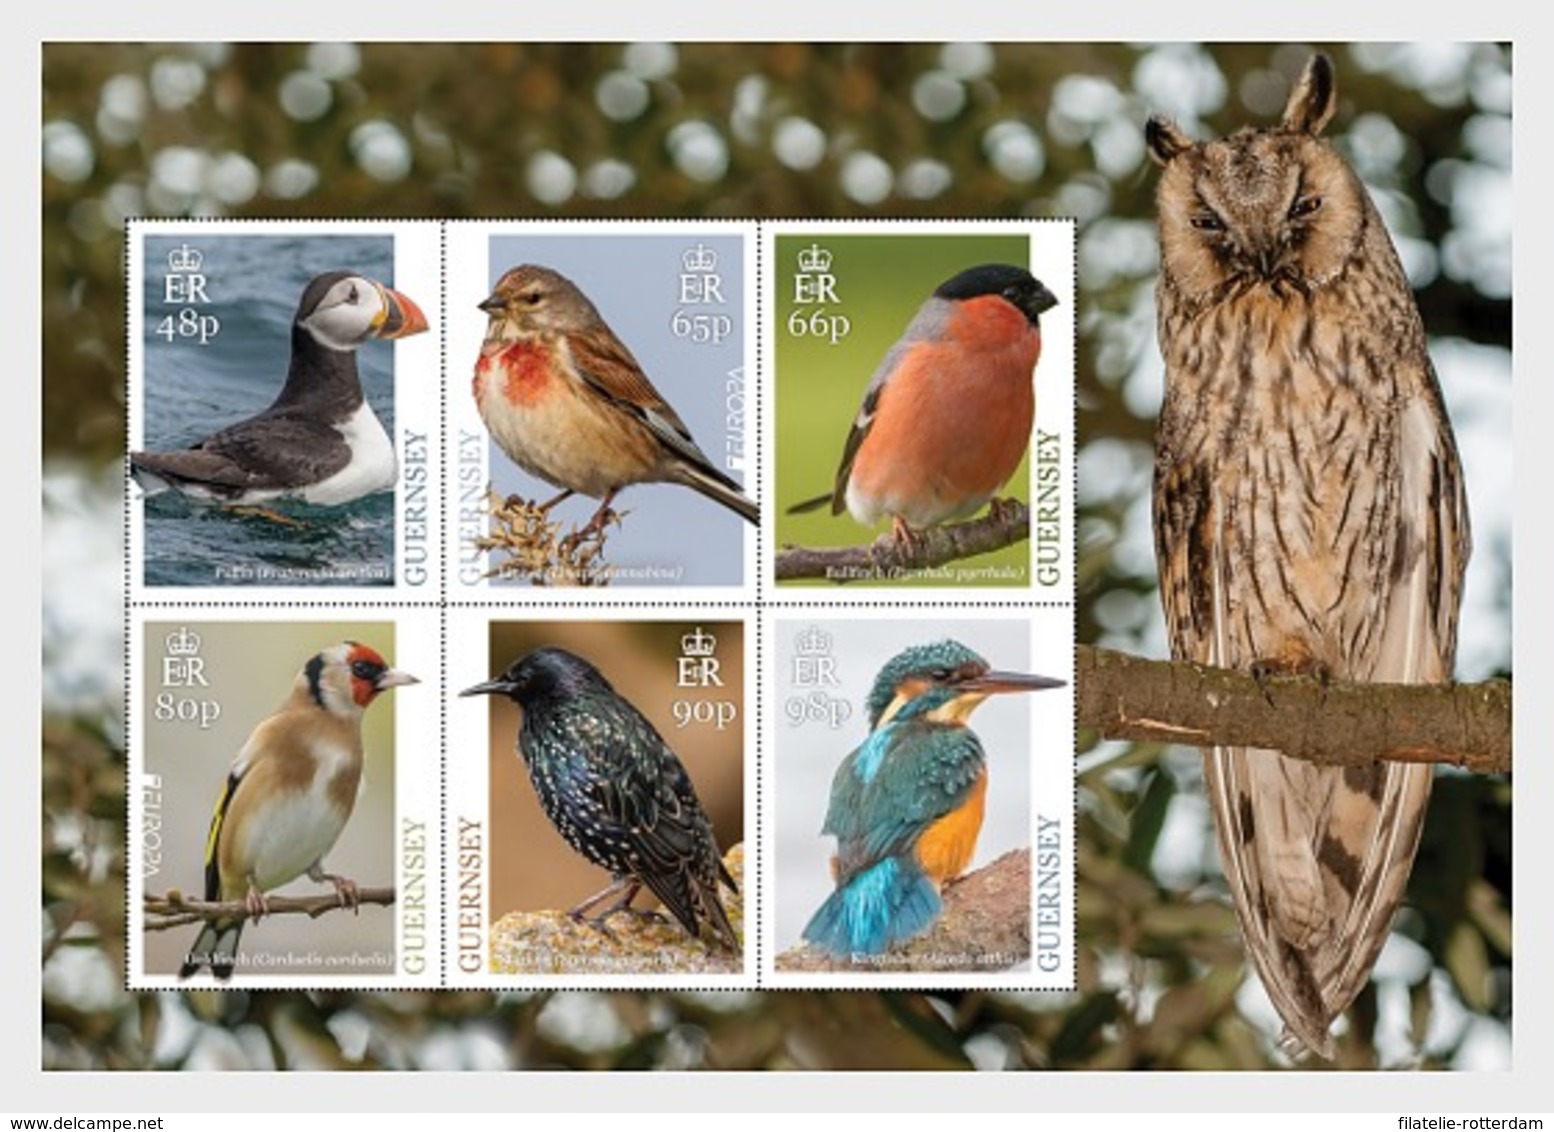 Guernsey - Postfris / MNH - Sheet Europa, Vogels 2019 - Guernsey